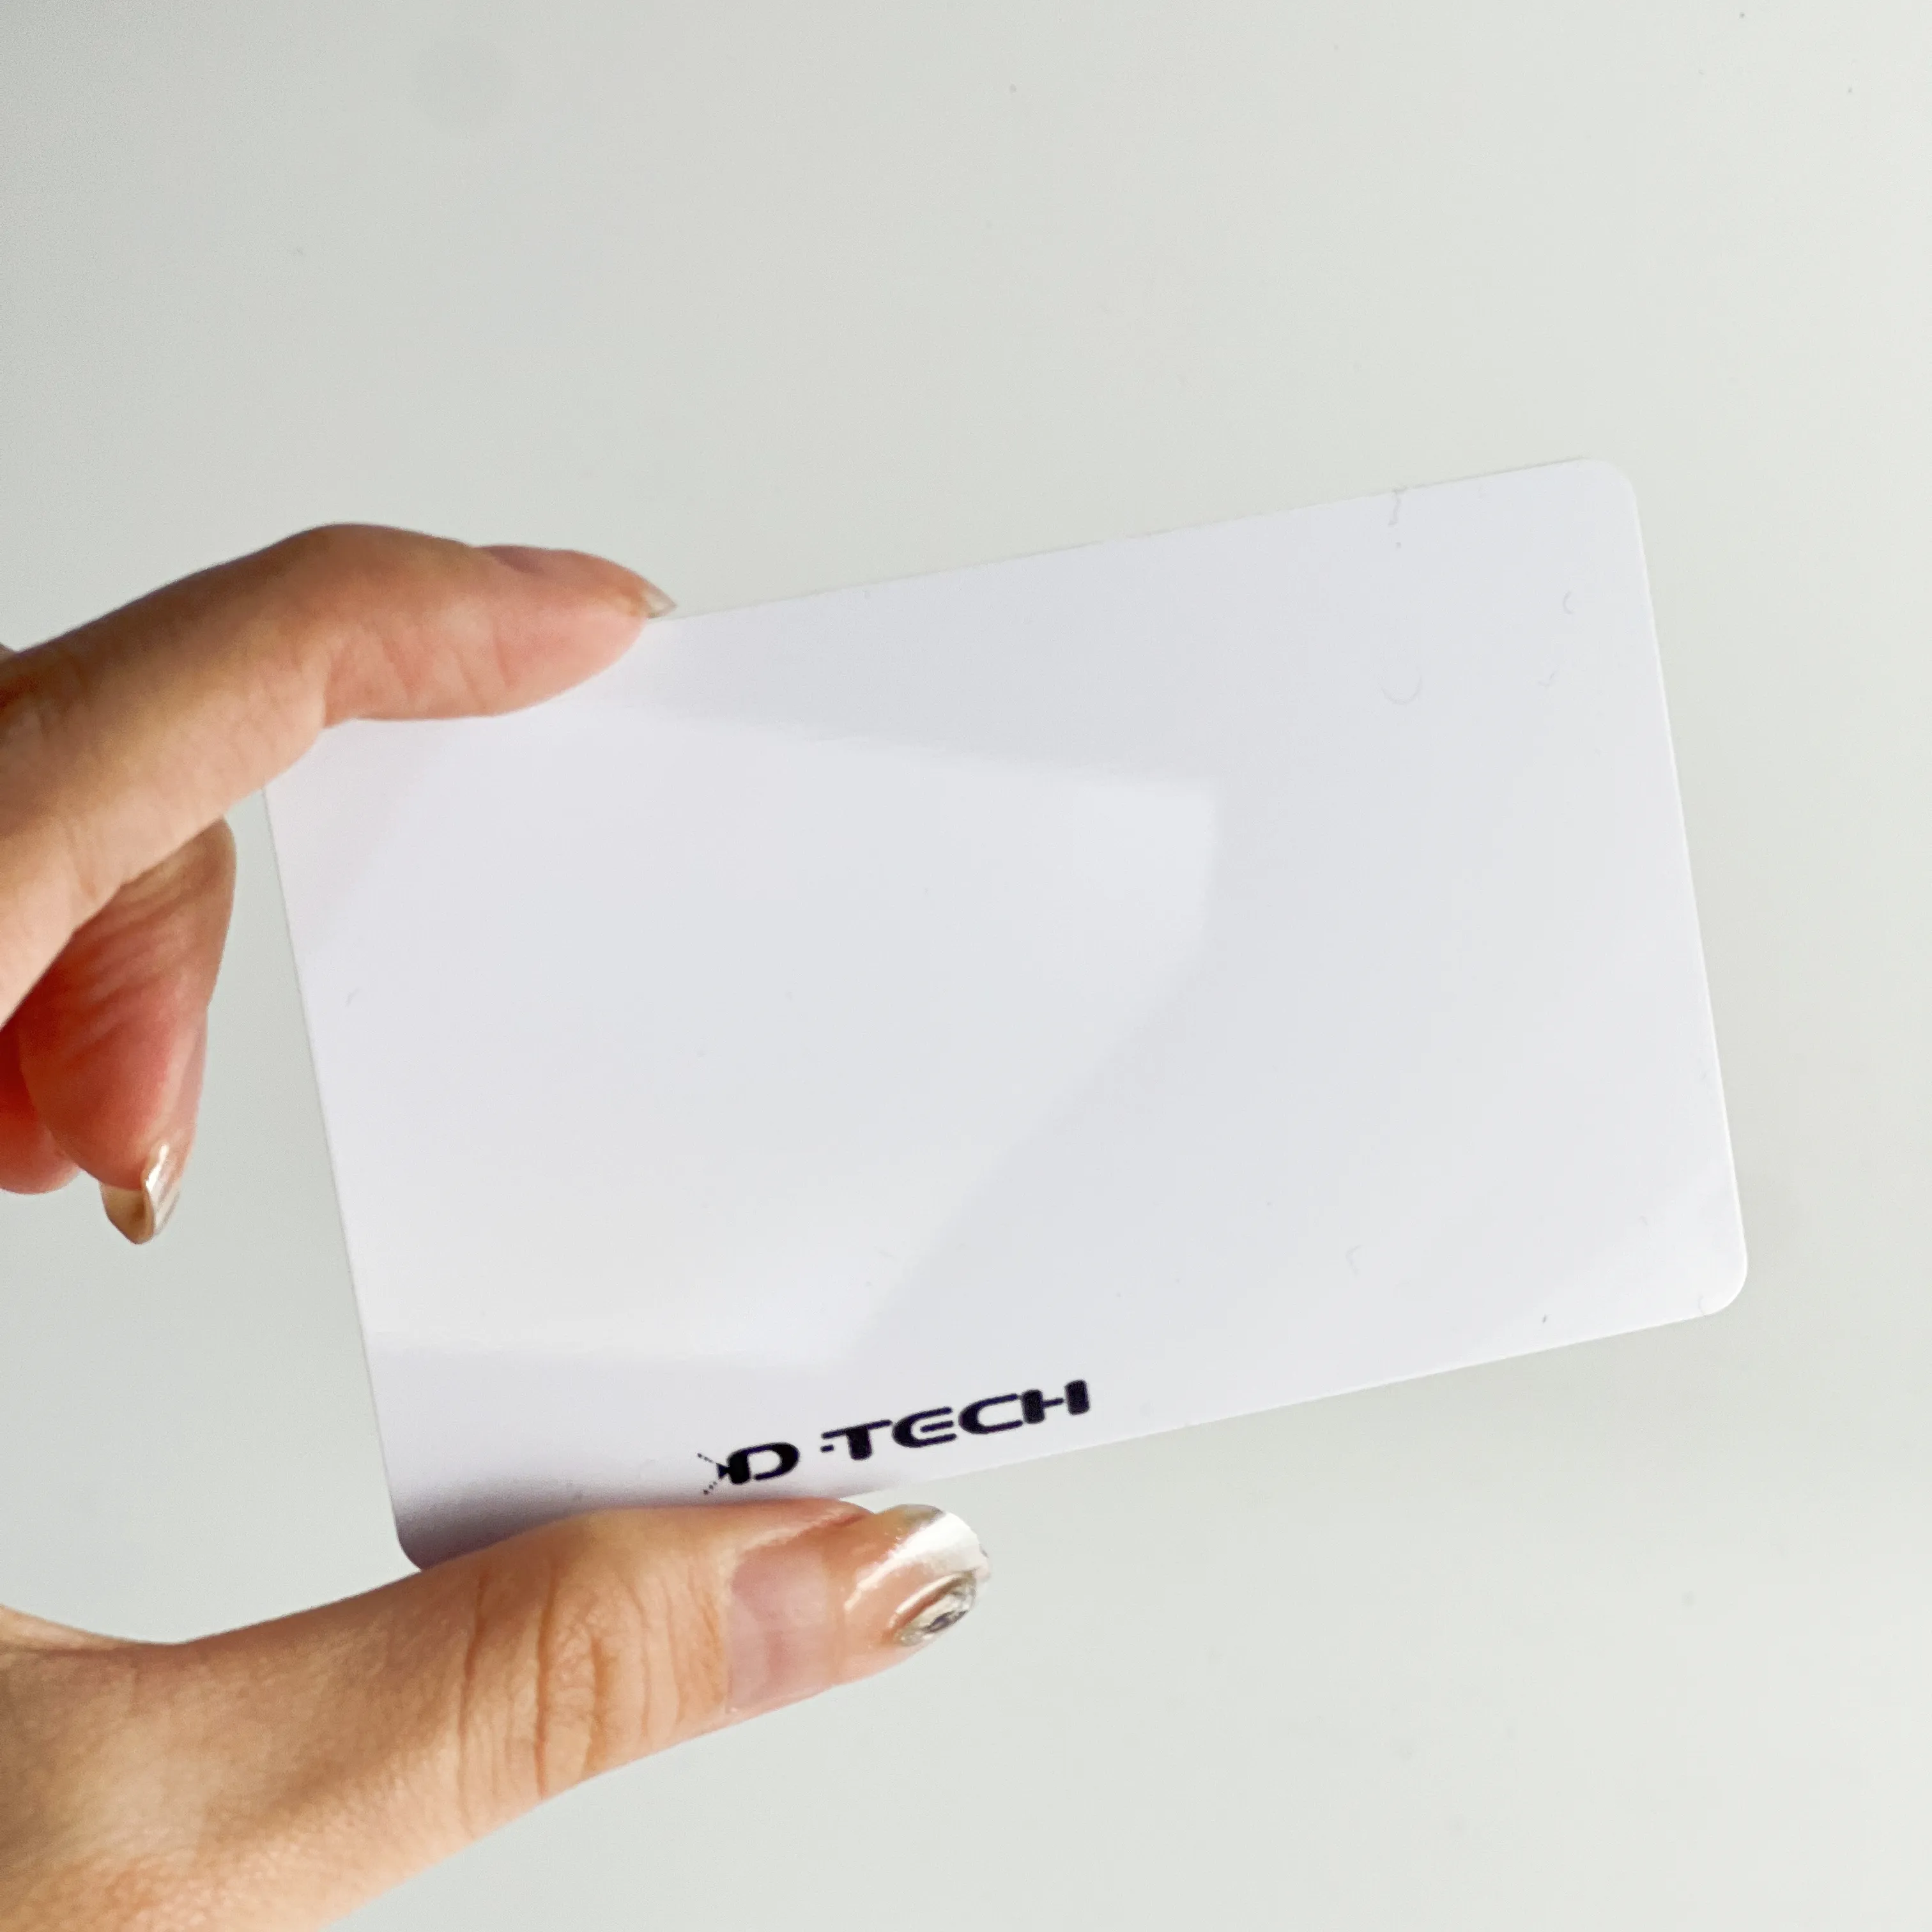 यूएचएफ खाली सफेद पीवीसी कार्ड आईडी कार्ड प्रिंटर प्रिंट करने योग्य लंबी रीडिंग रेंज आरएफआईडी कार्ड